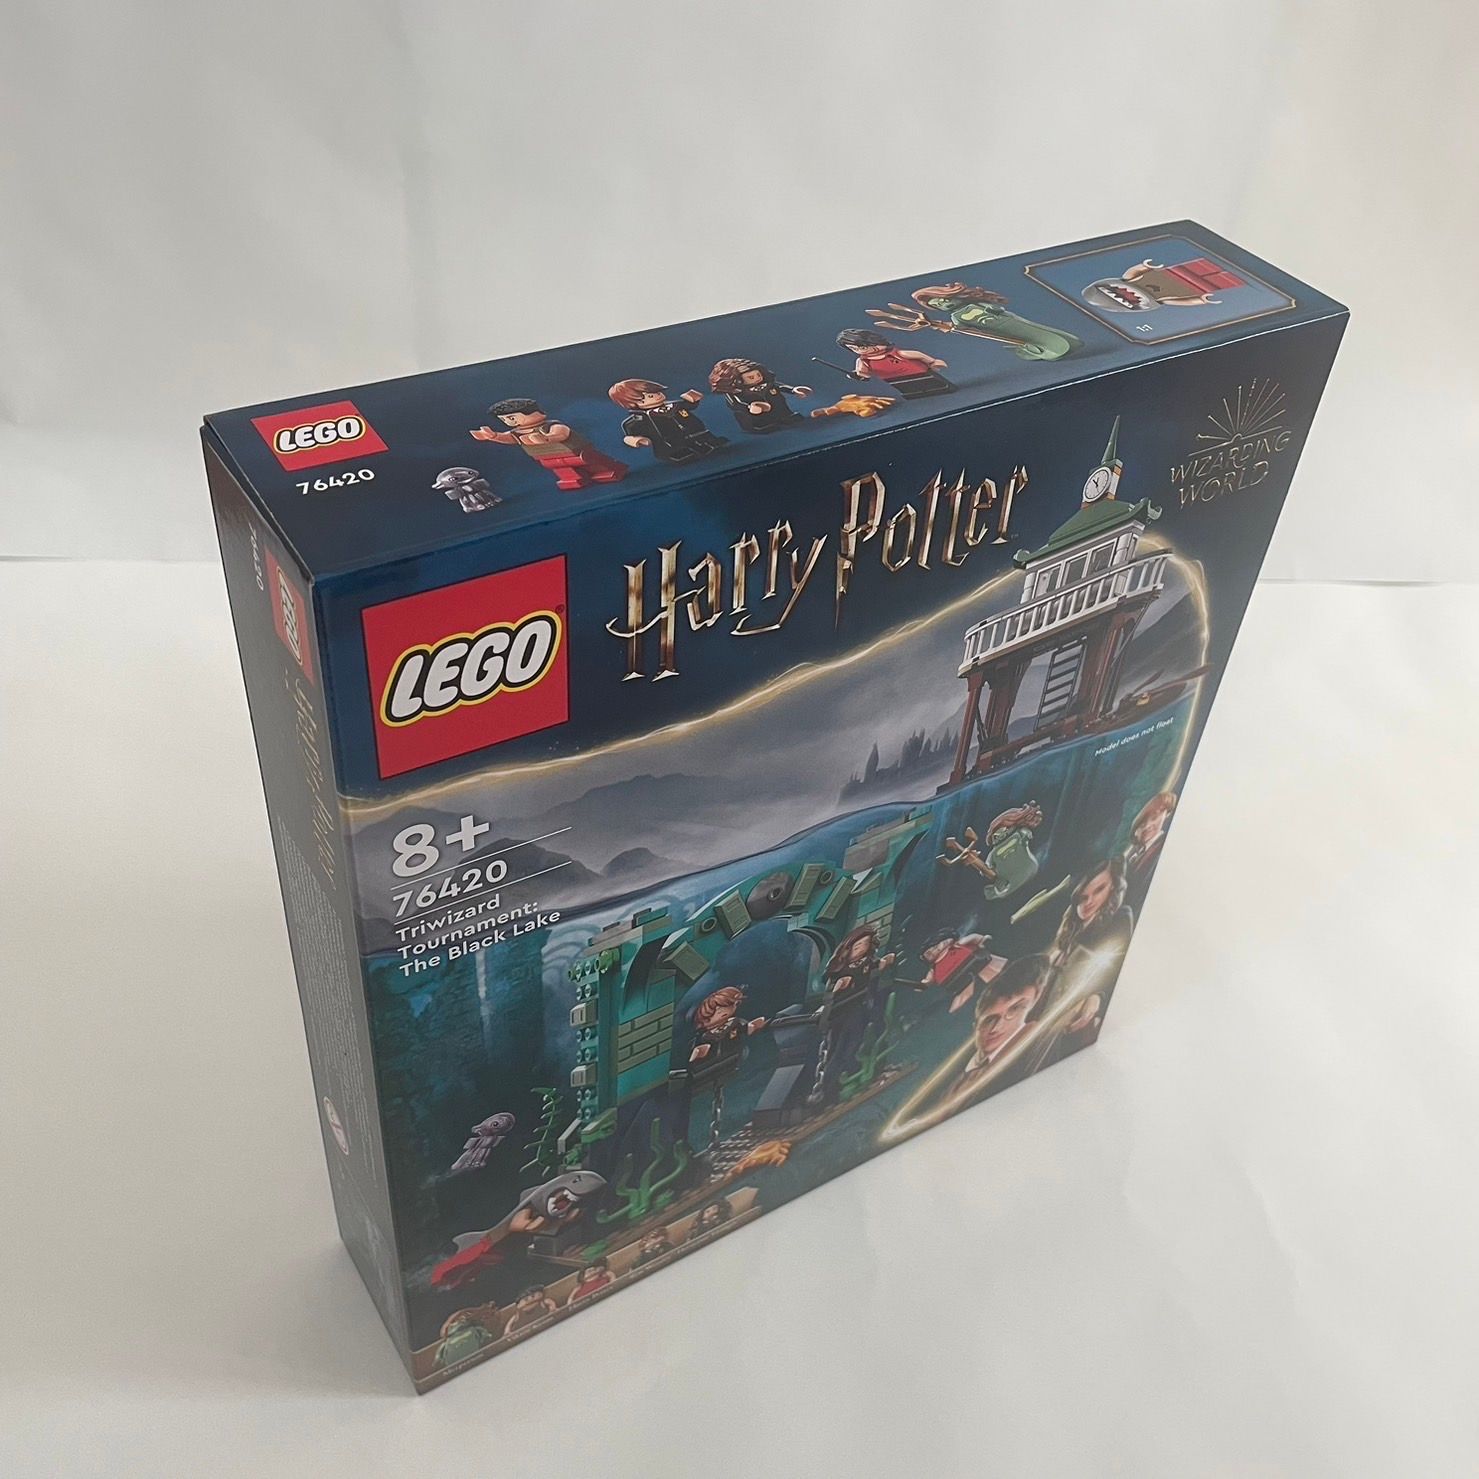 レゴ(LEGO) ハリー・ポッター 三大魔法学校対抗試合:黒い湖 76420